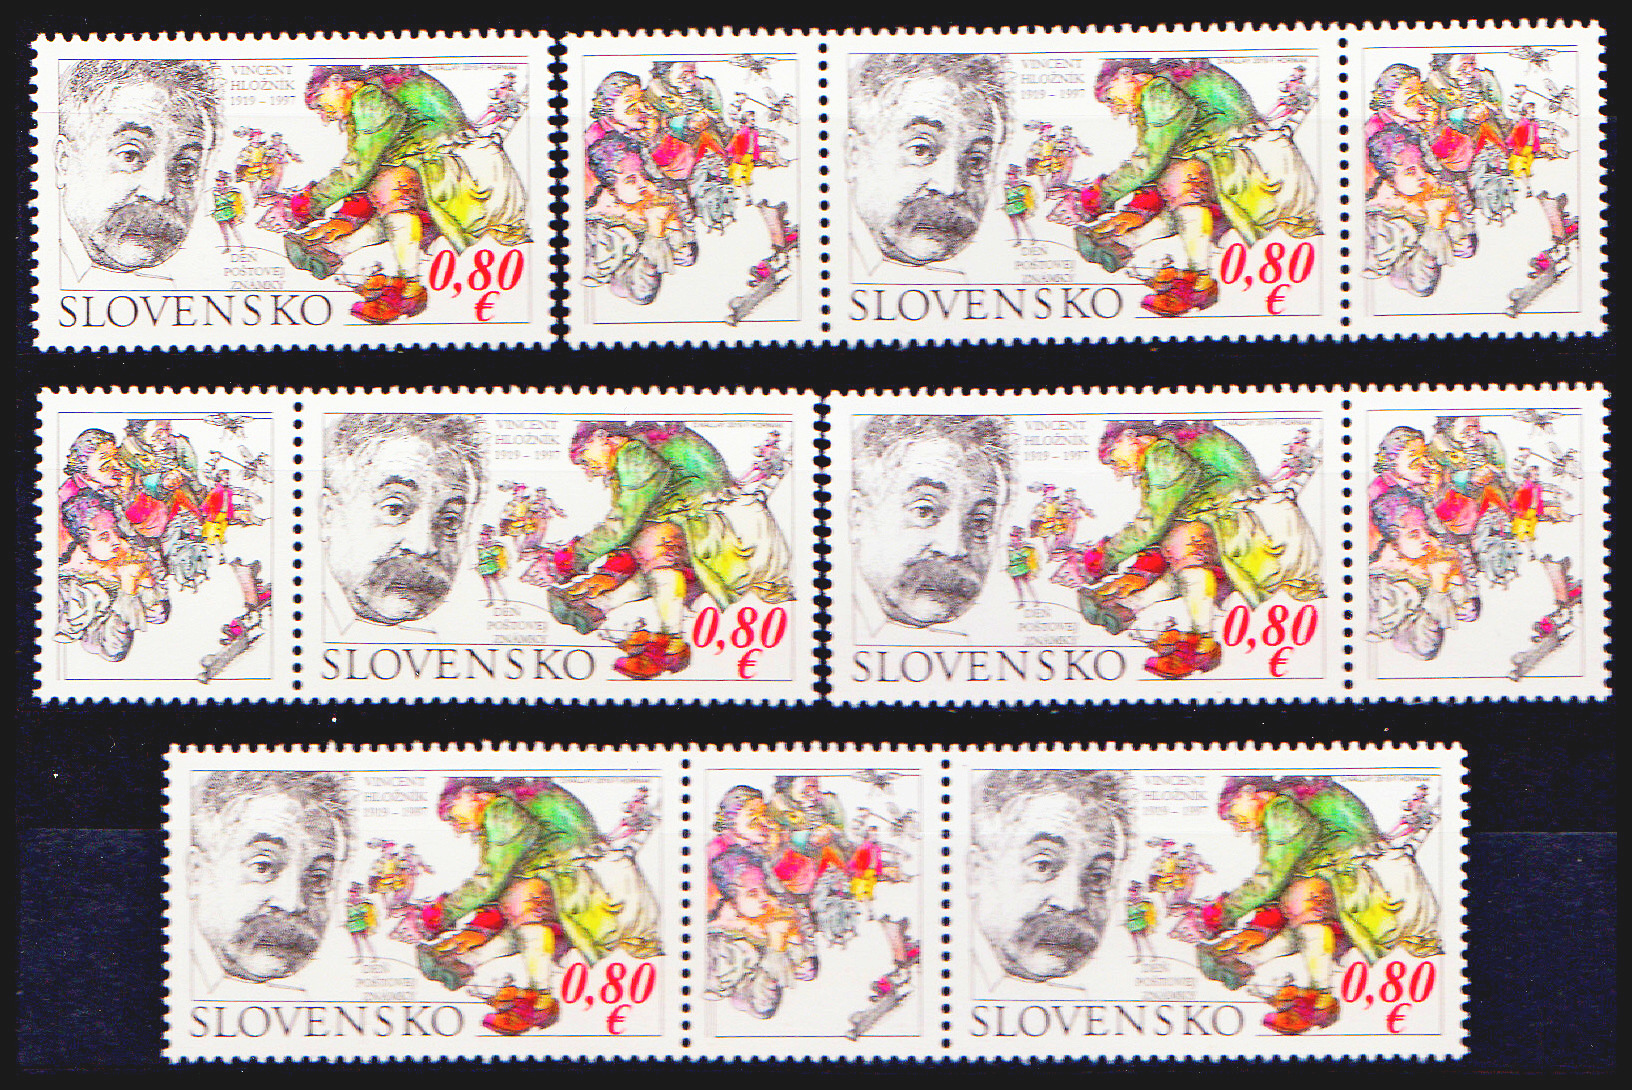 Den poštovní známky 2019: Vincent Hložník1919 - 1997 (kombinace 6 zn. + 5 K)